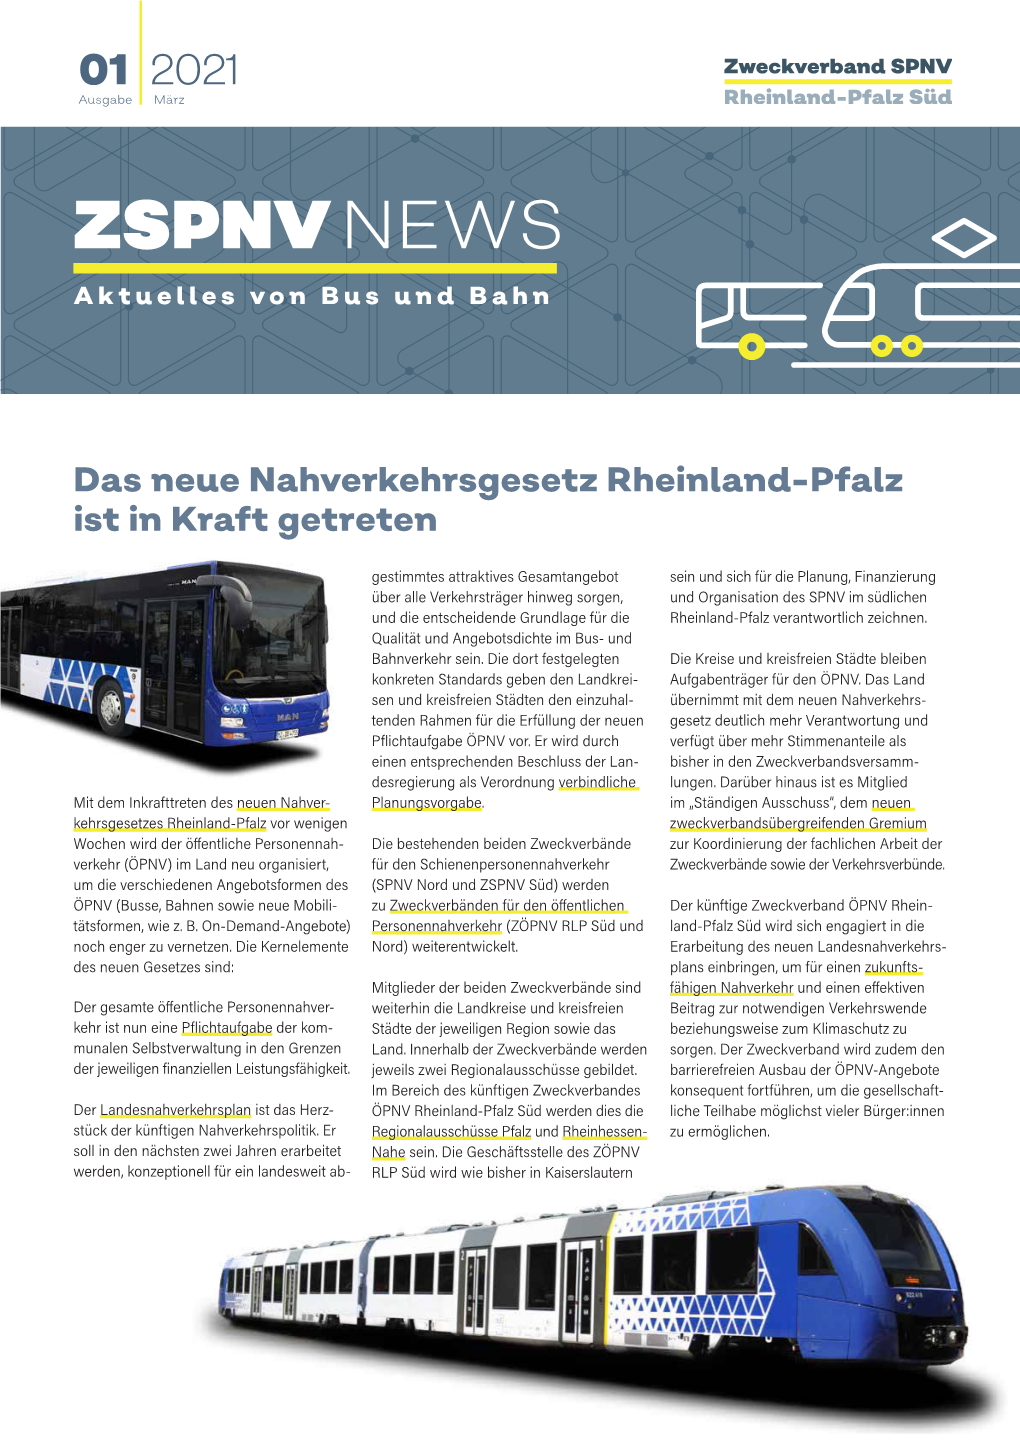 ZSPNV NEWS Aktuelles Von Bus Und Bahn